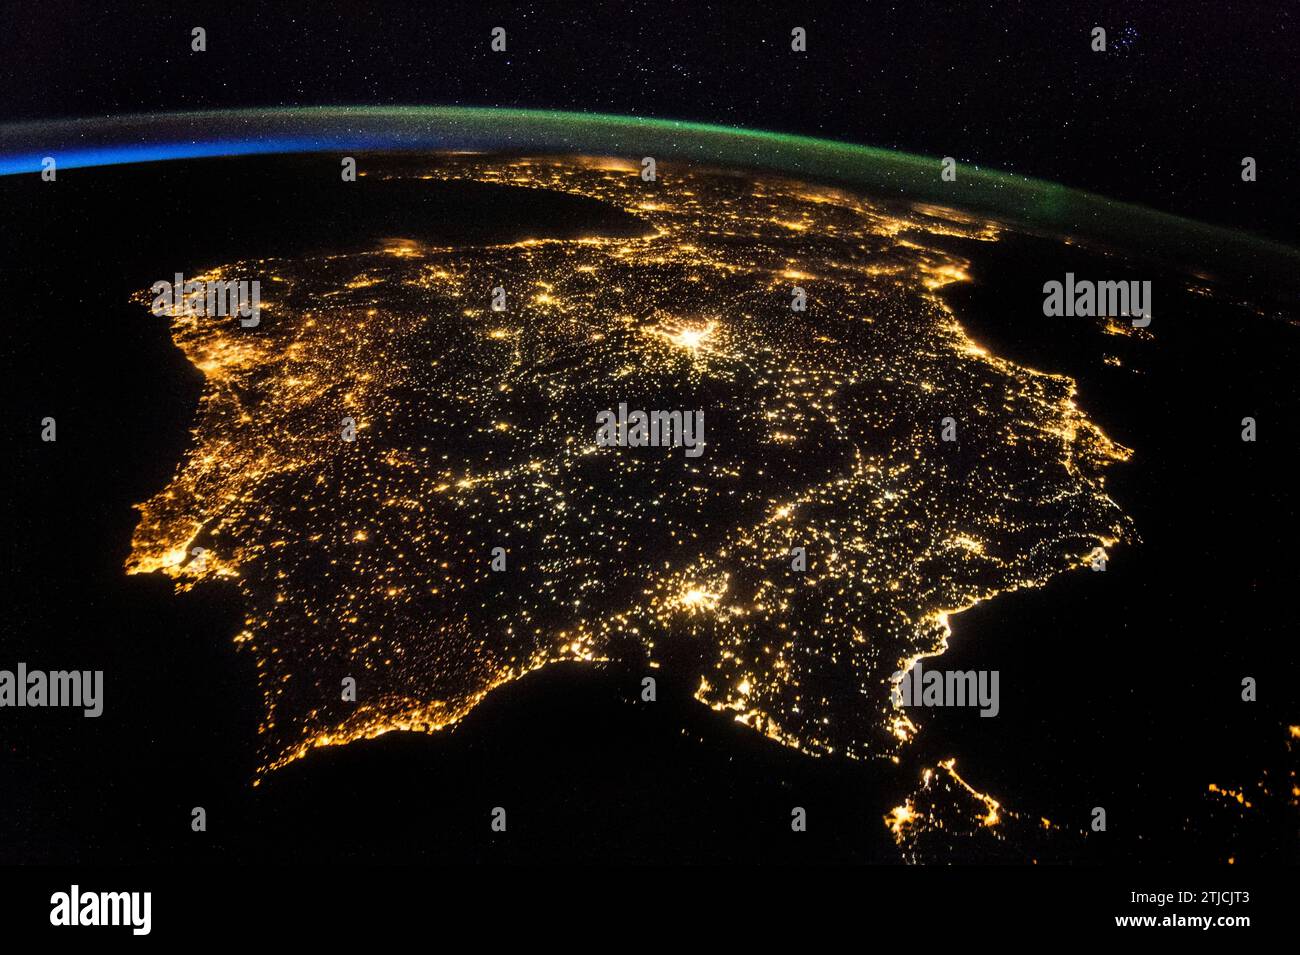 Penisola iberica di notte presa dalla stazione spaziale Internazionale, 26 luglio 2014. Uno dei membri dell'equipaggio della Expedition 40 a bordo della stazione spaziale Internazionale ha registrato questa foto serale dell'intera penisola iberica (Spagna, Portogallo e Andorra) il 26 luglio 2014. Parte della Francia può essere vista in cima all'immagine e lo stretto di Gibilterra è visibile in basso, con una piccolissima porzione di Marocco visibile vicino all'angolo in basso a destra. Una versione ottimizzata di un'immagine originale della NASA / credito: NASA Foto Stock